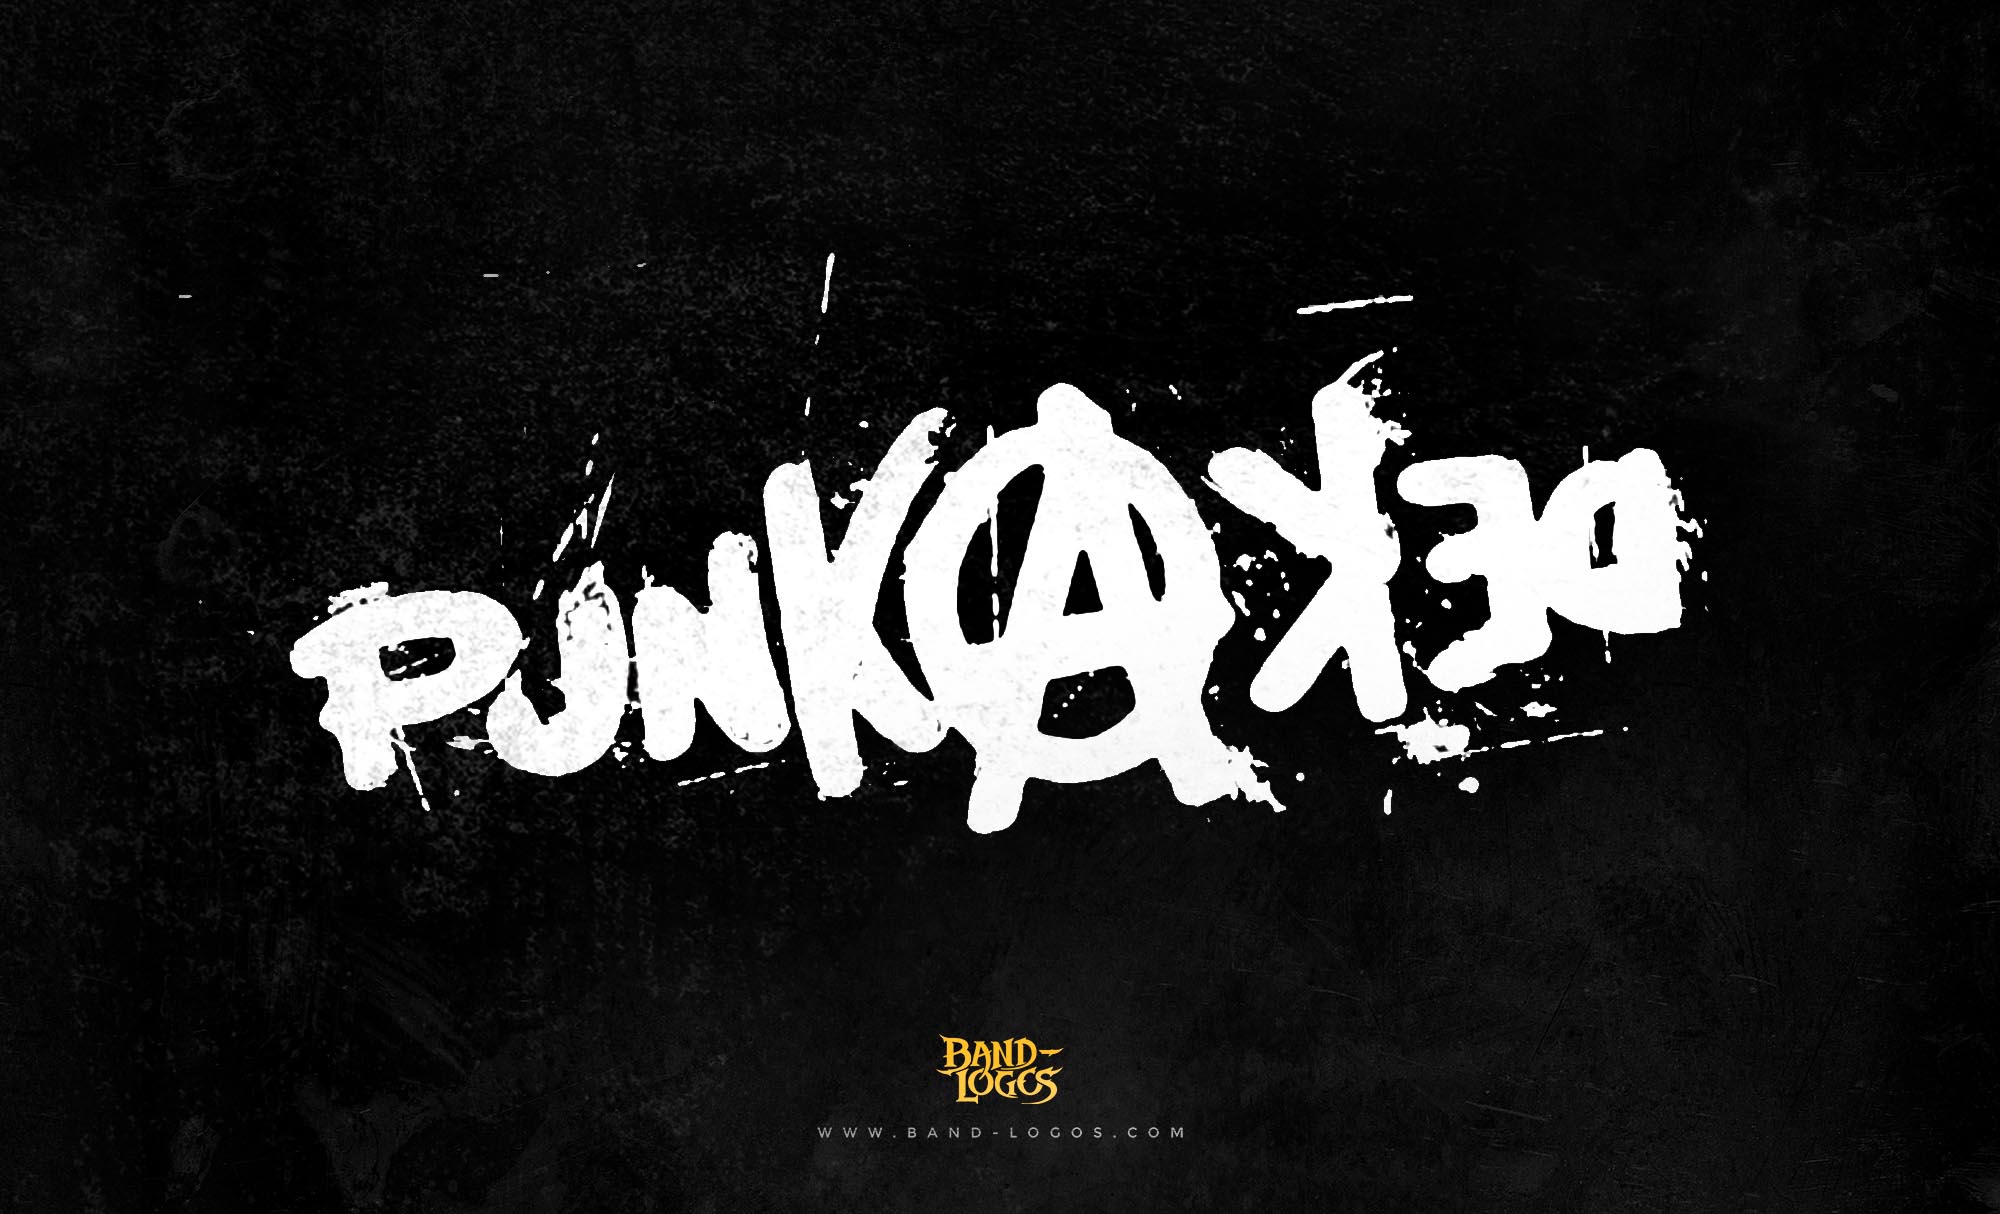 Post Punk Logos. Band Logos. We